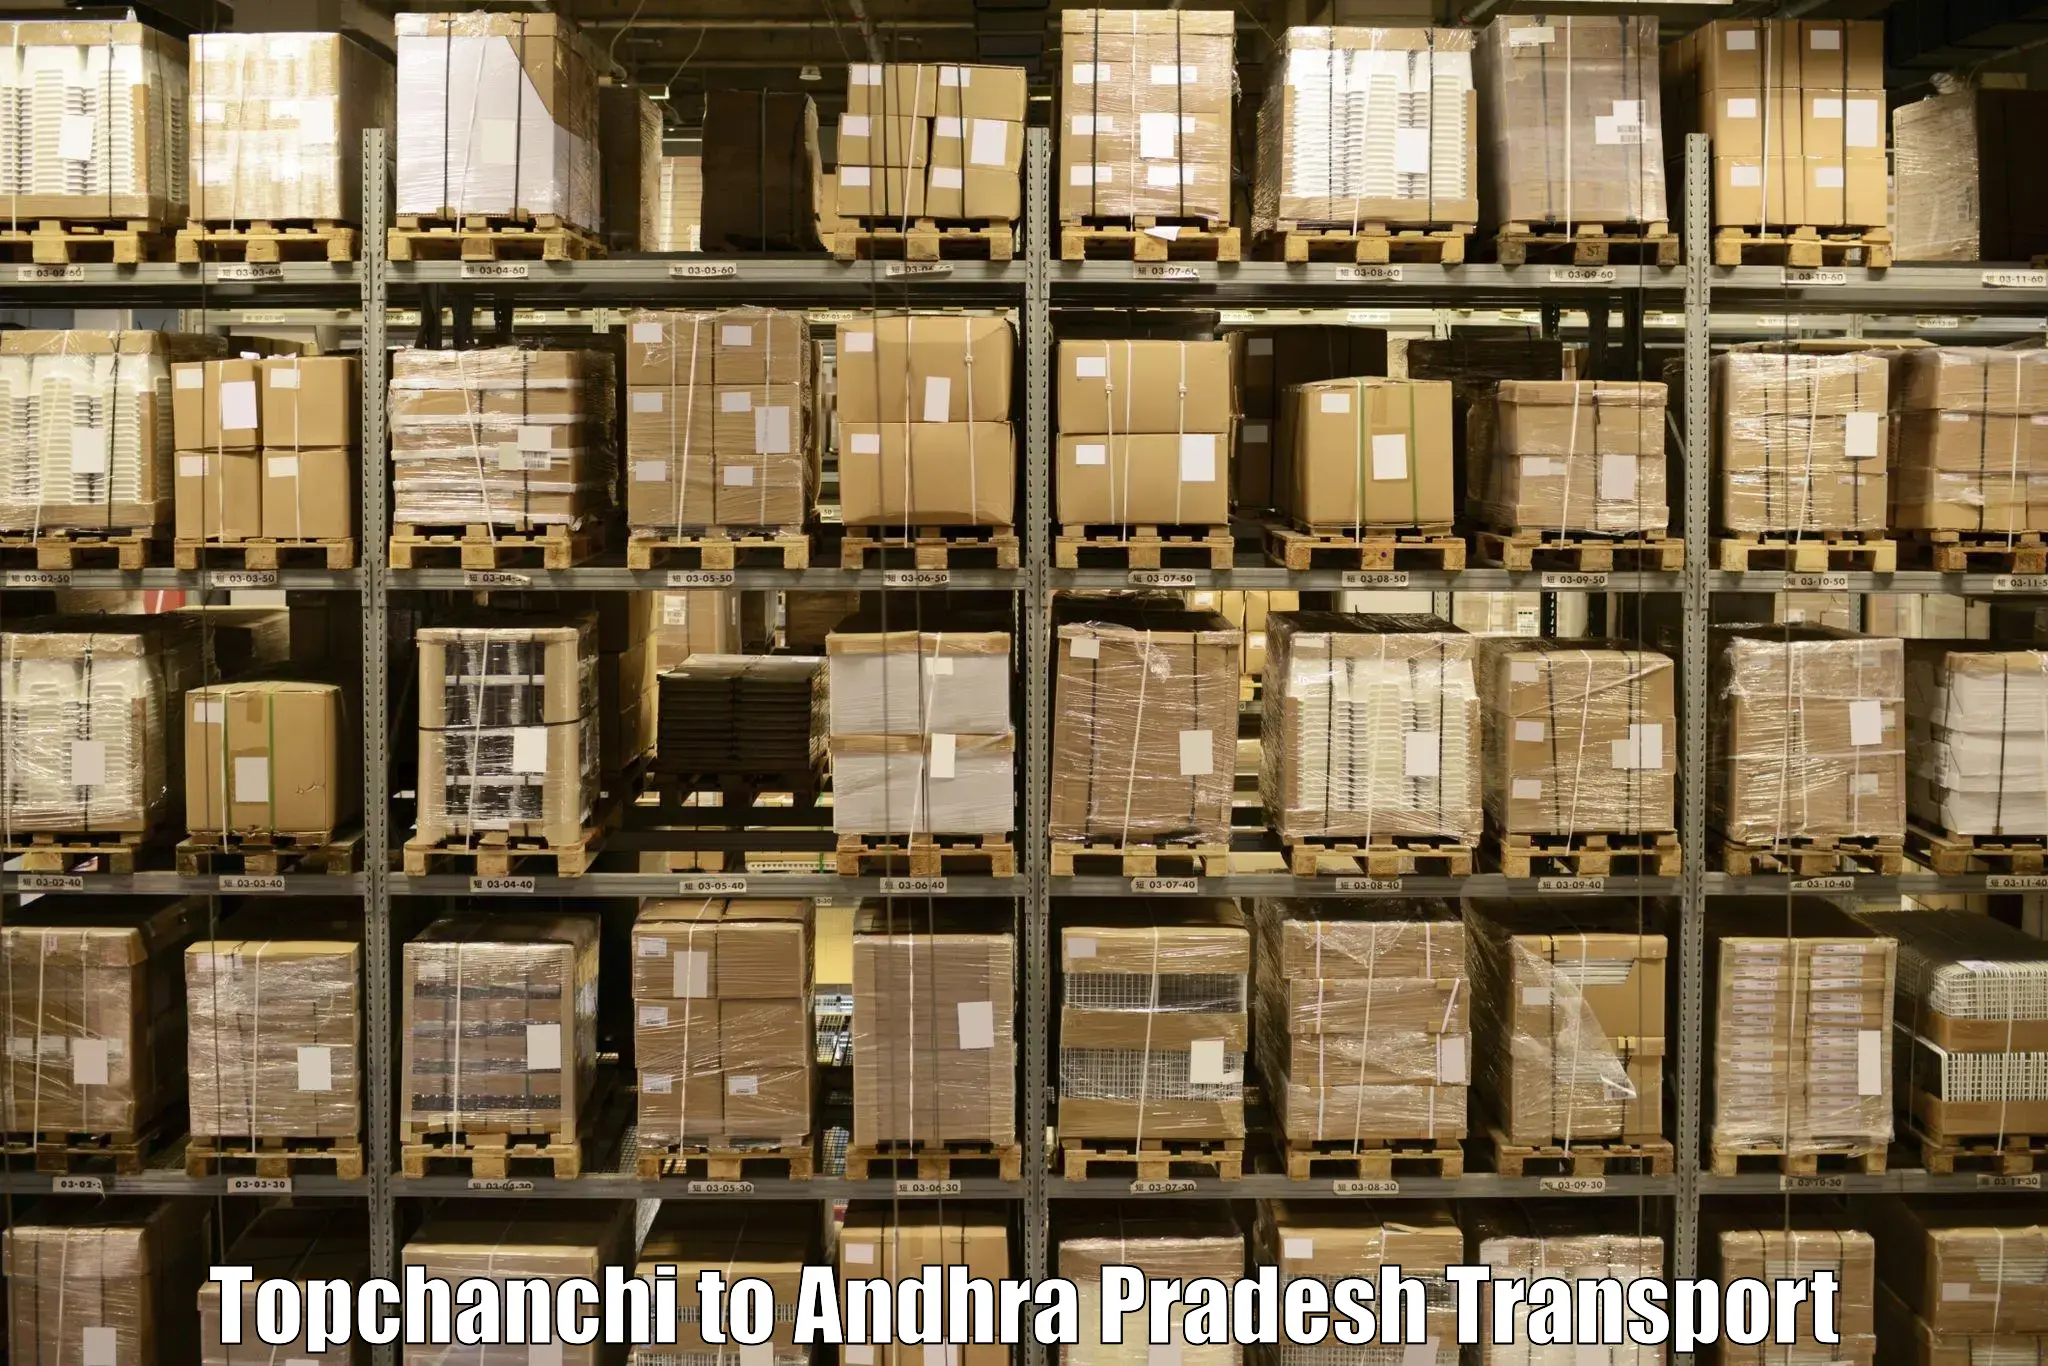 Door to door transport services Topchanchi to Puttur Tirupati